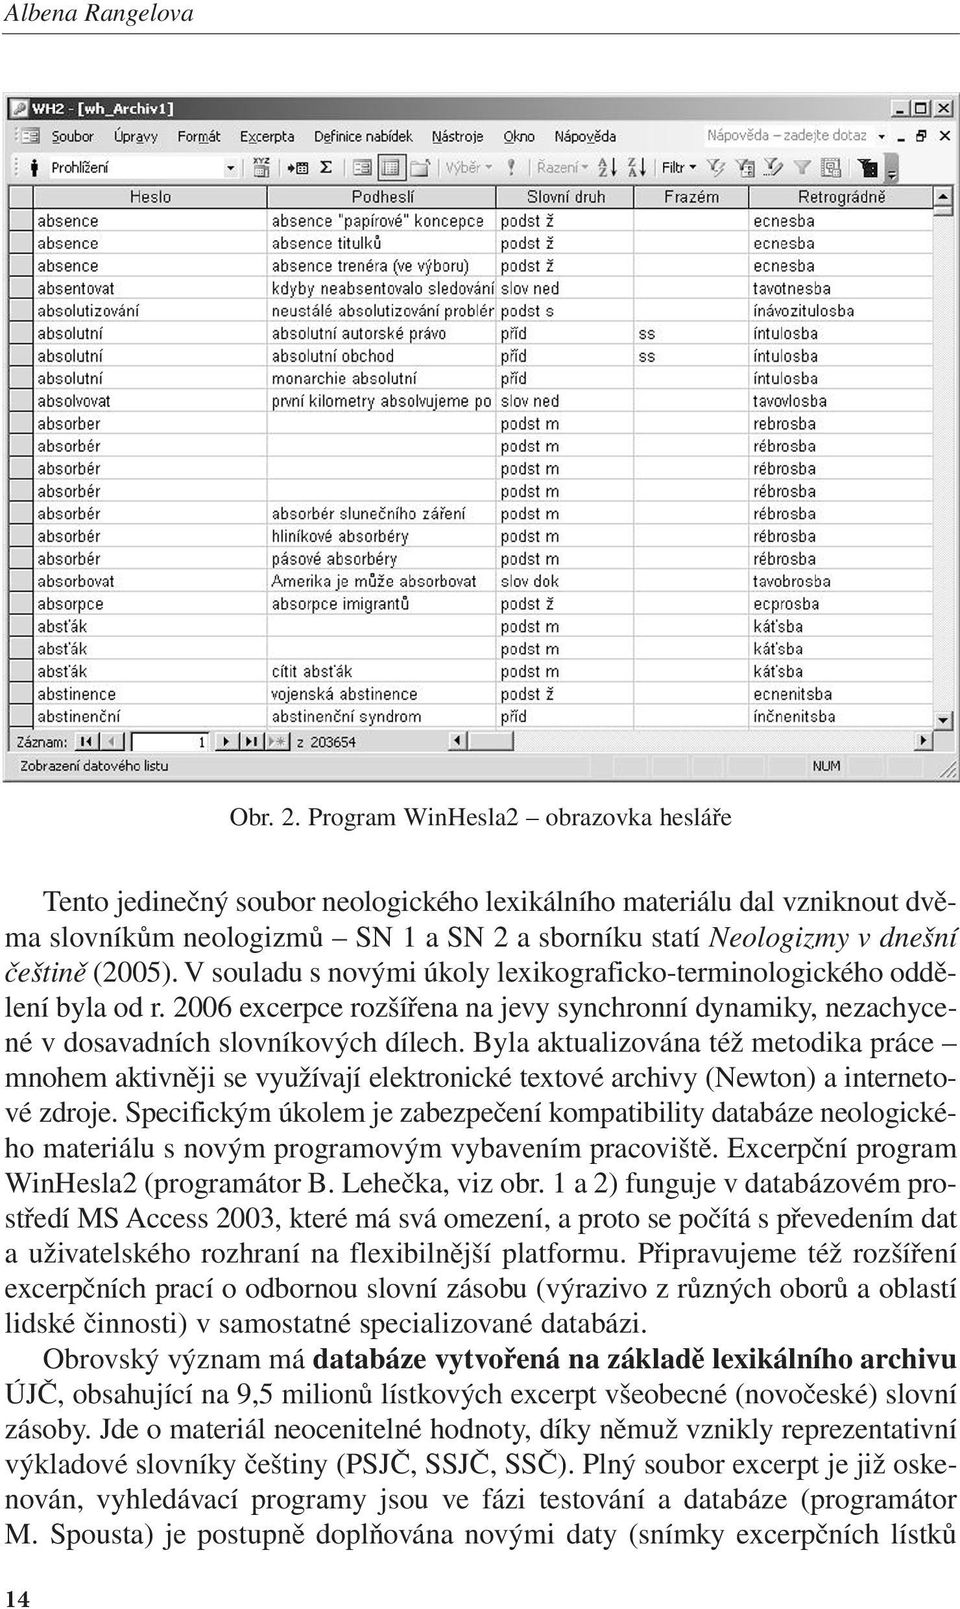 V souladu s novými úkoly lexikograficko-terminologického oddělení byla od r. 2006 excerpce rozšířena na jevy synchronní dynamiky, nezachycené v dosavadních slovníkových dílech.